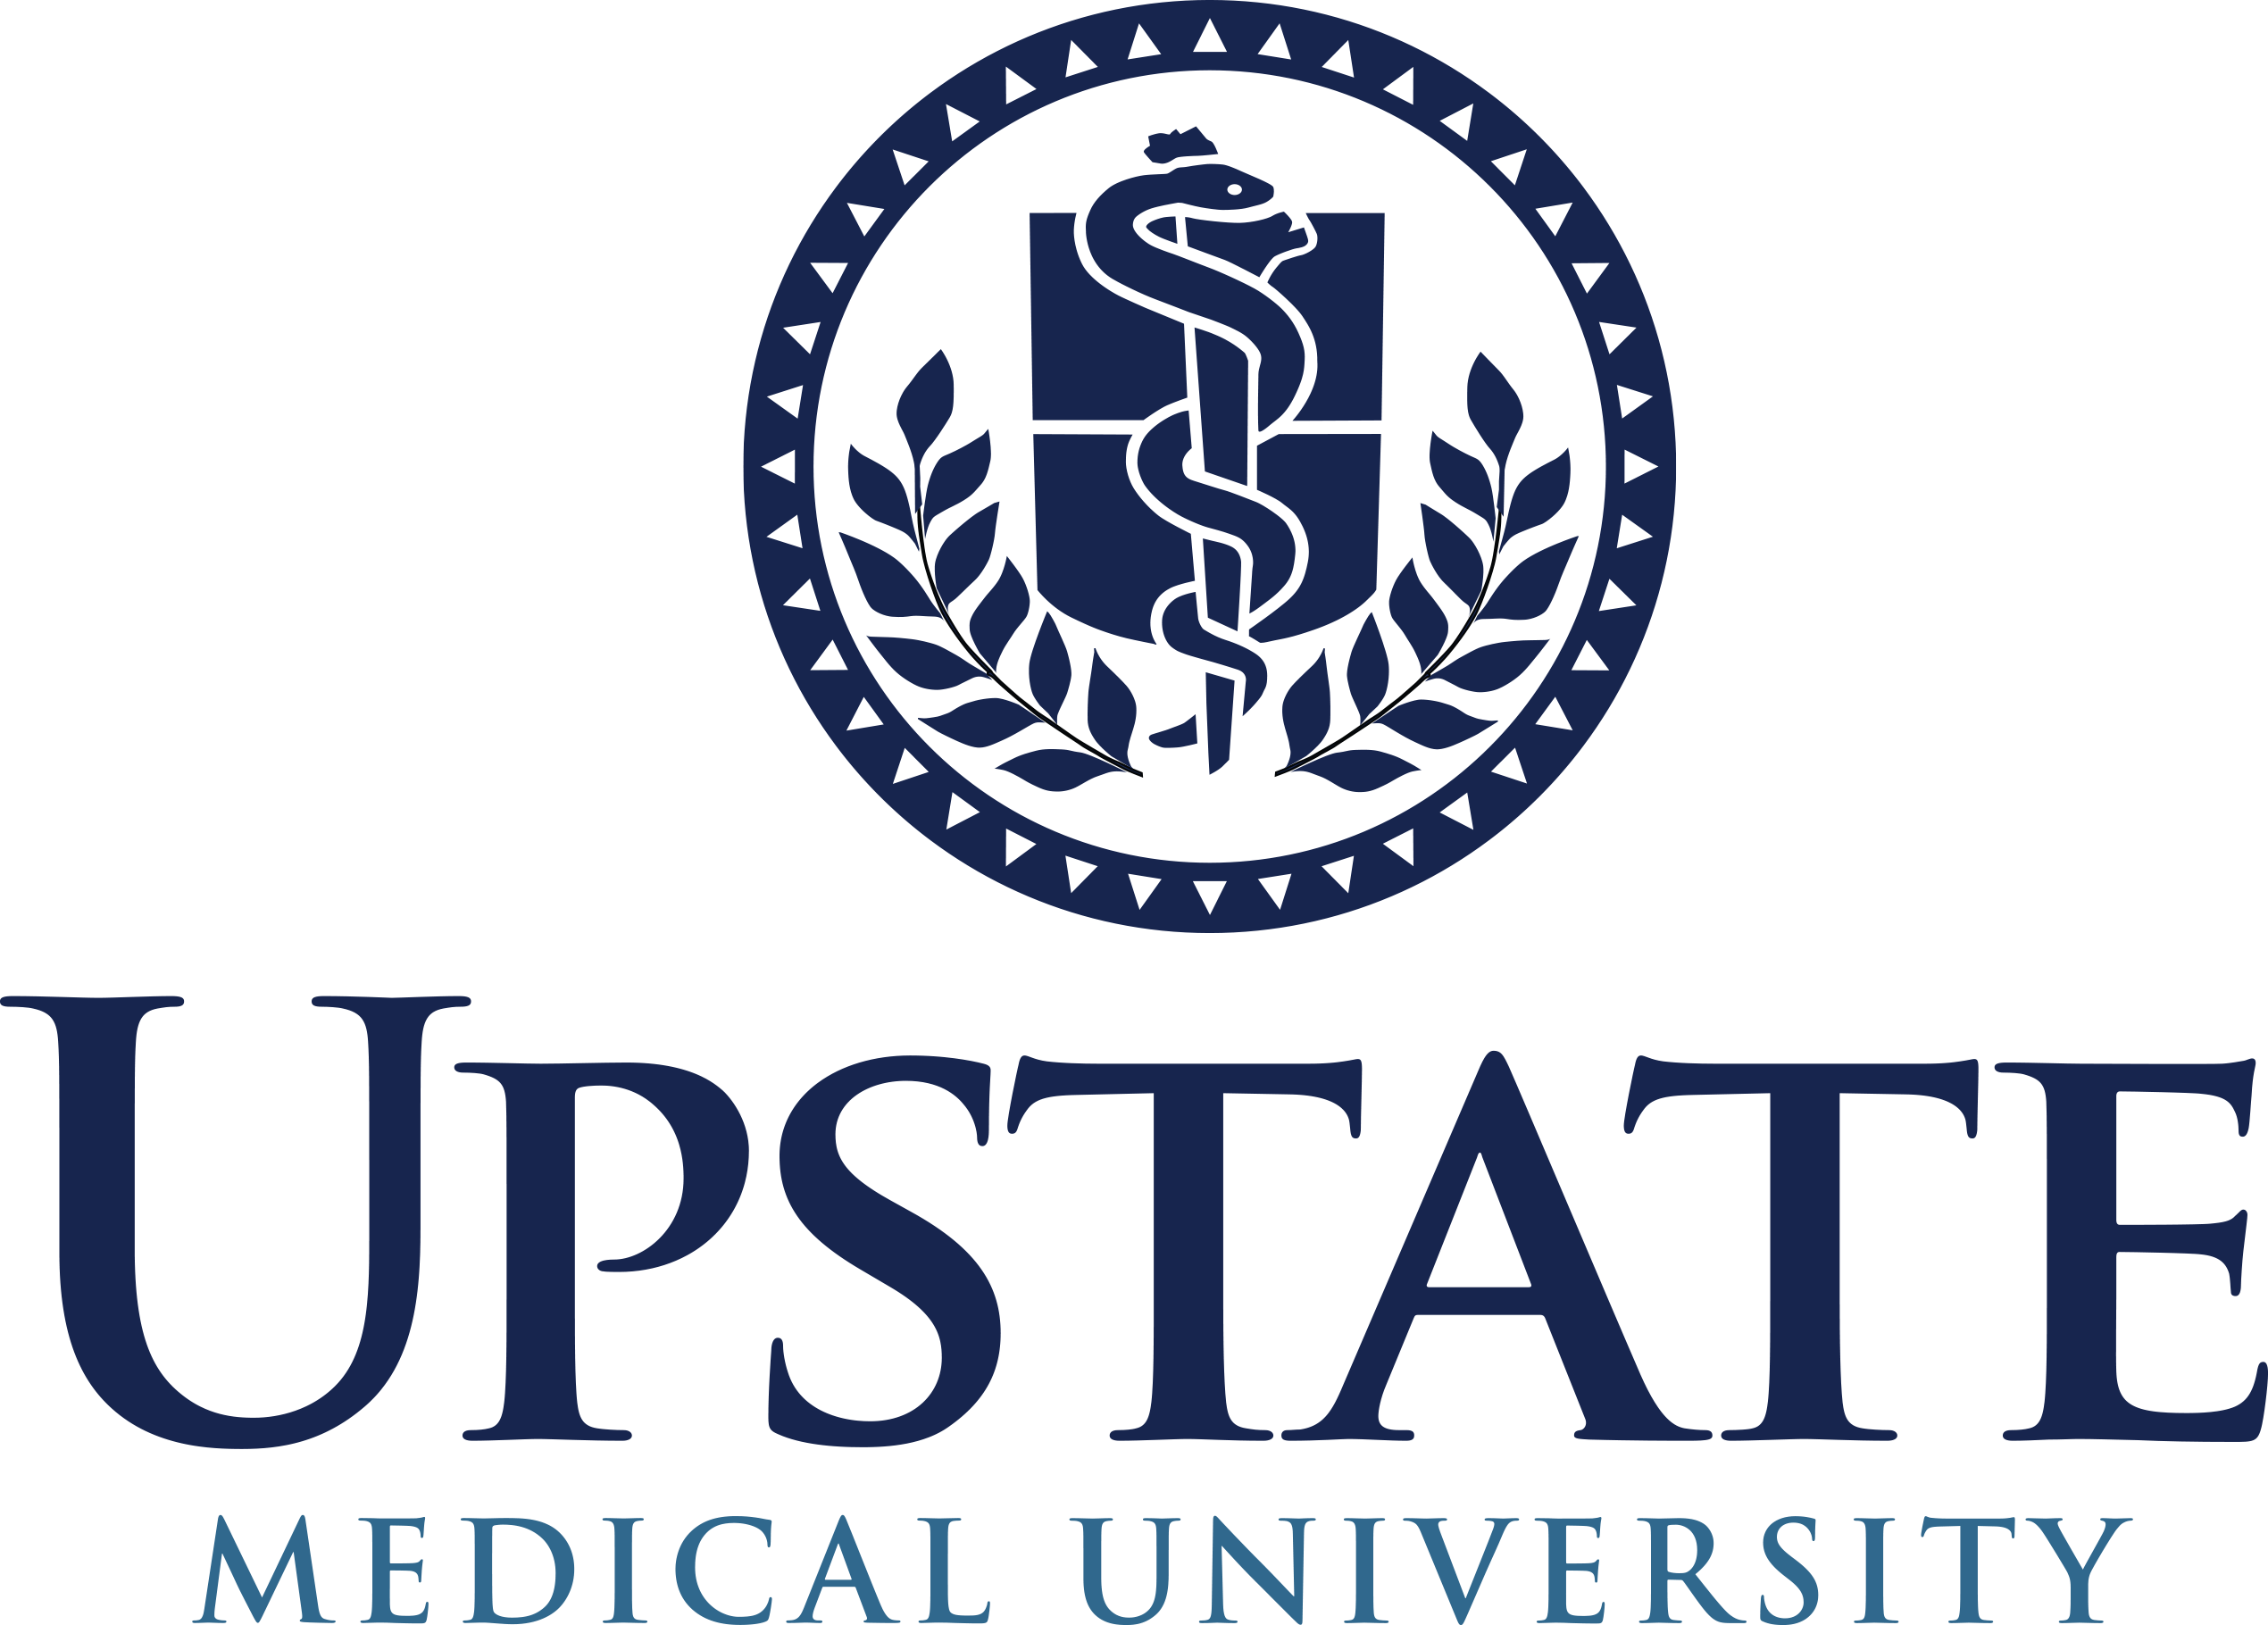 Medical White Logo - Upstate Logos | Marketing Communications |SUNY Upstate Medical ...